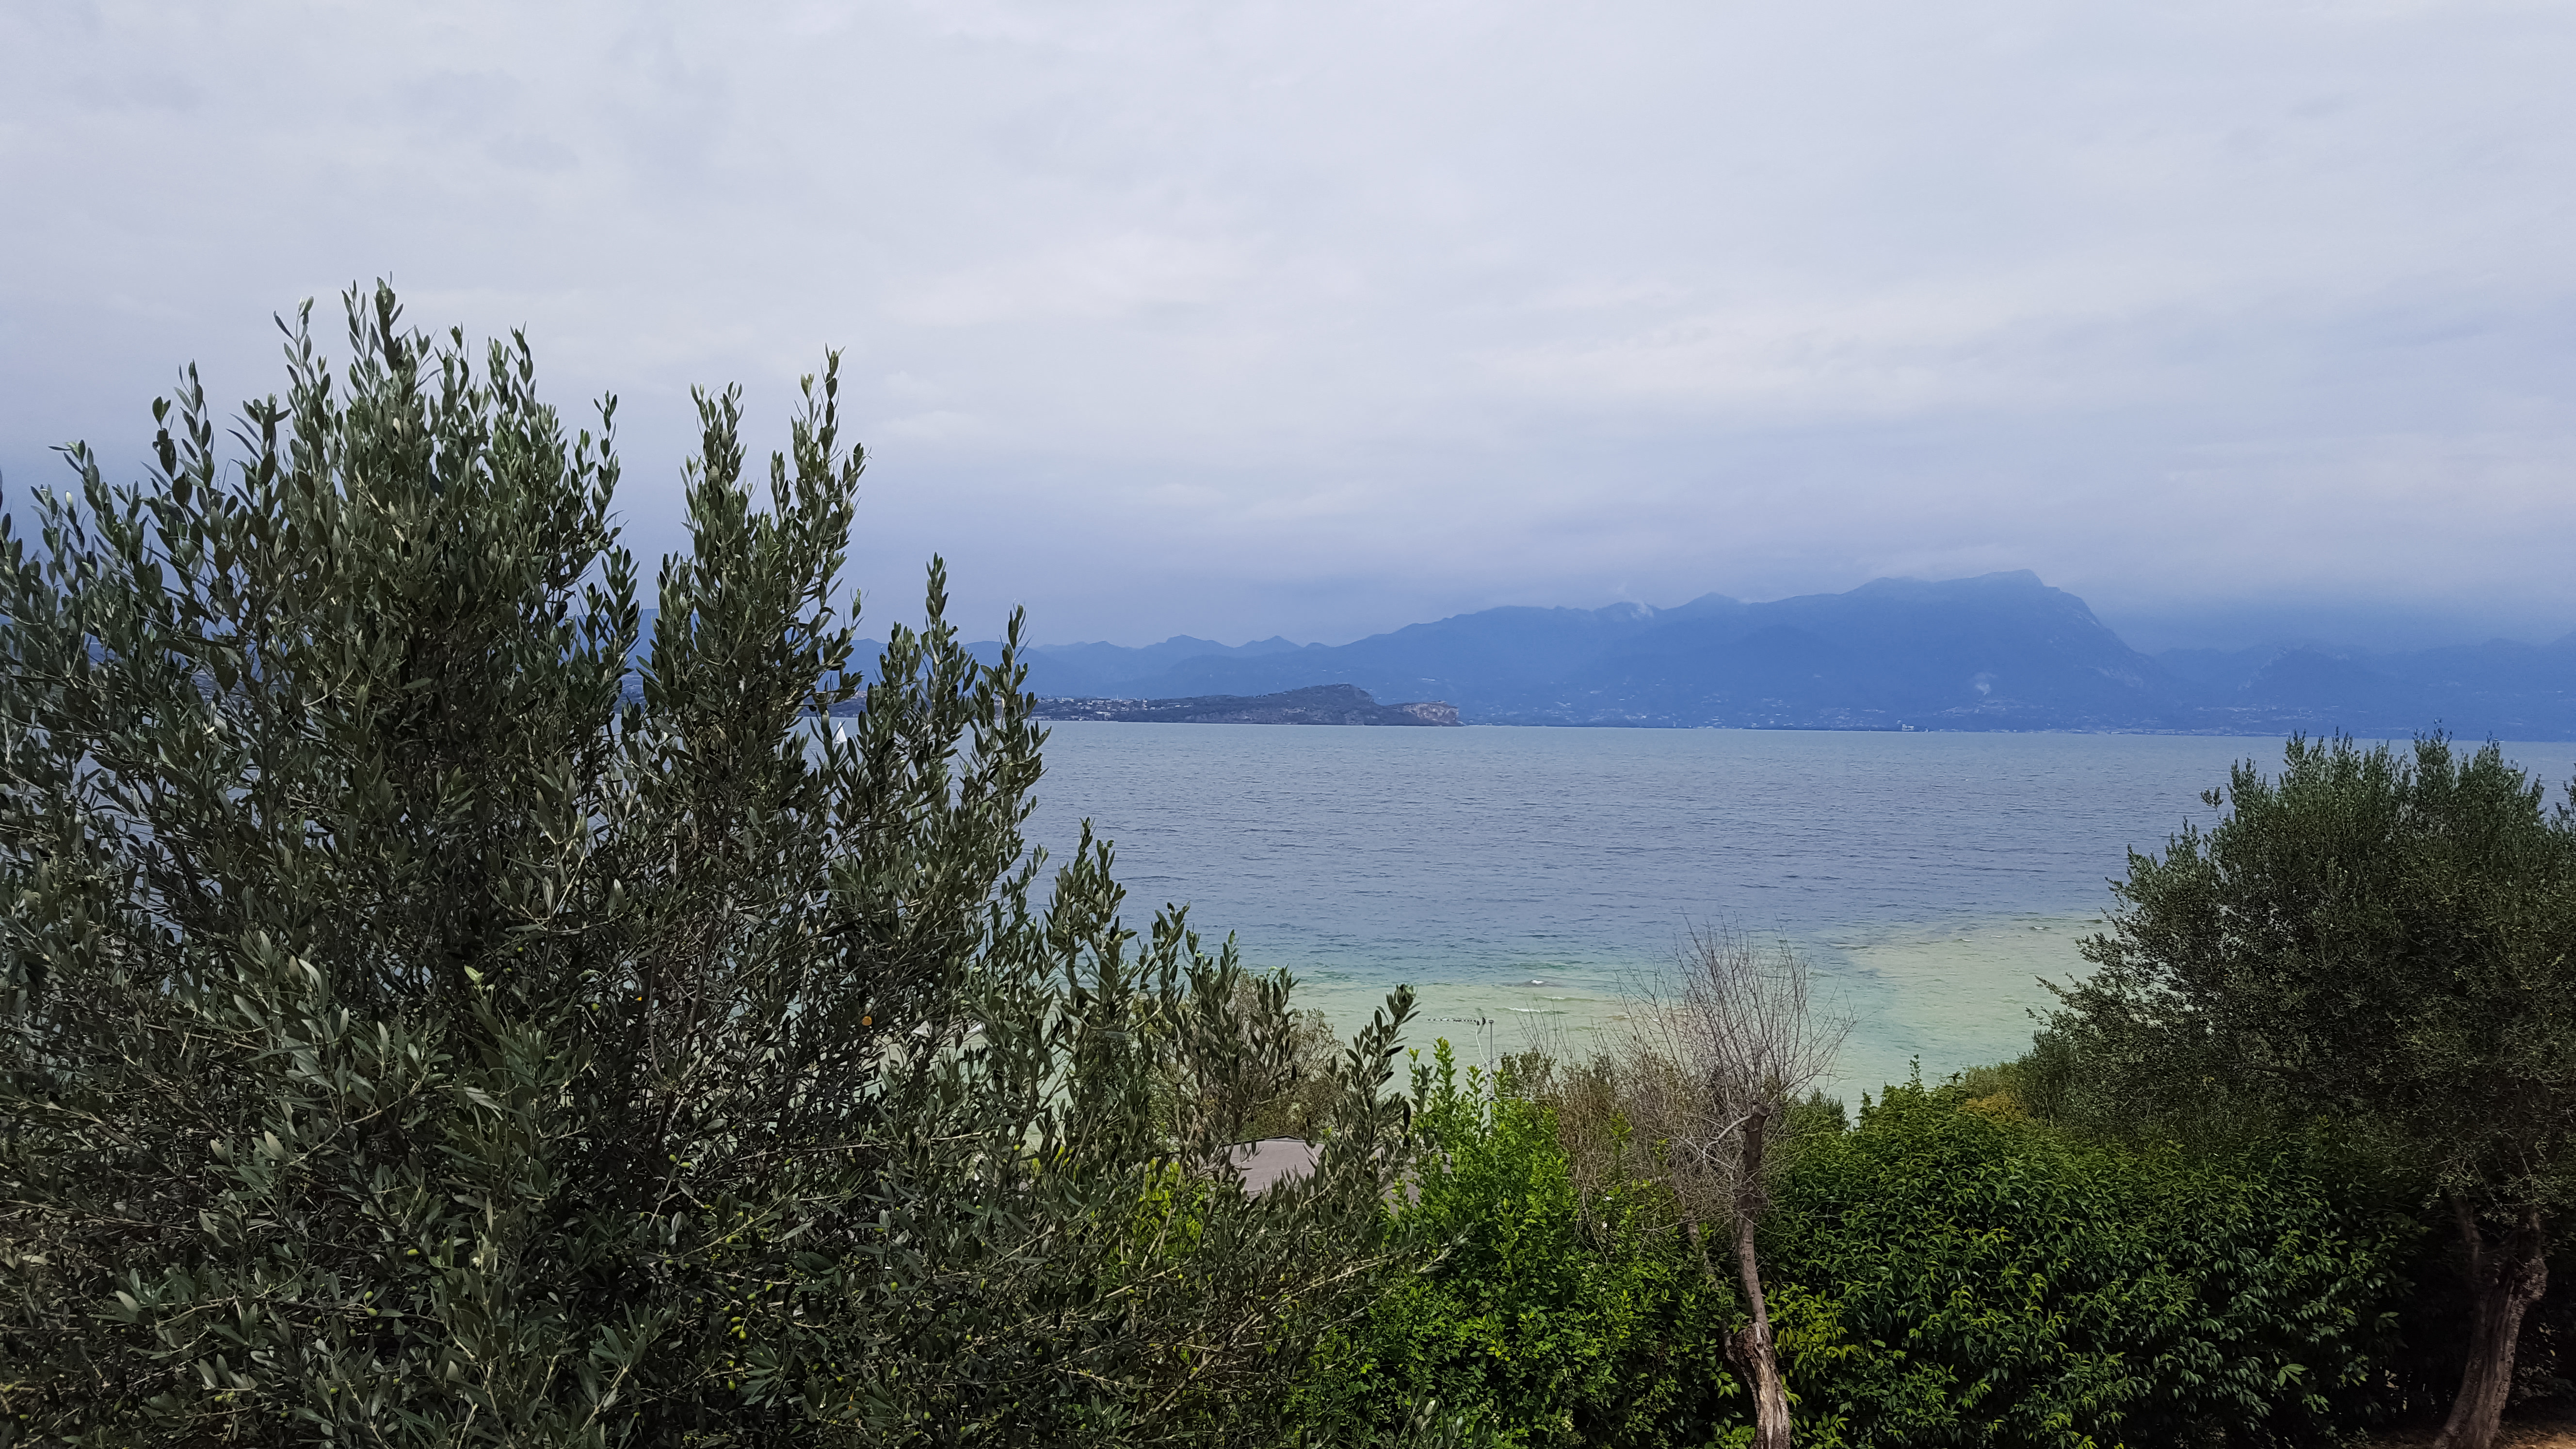 Nivelul de apă foarte scăzut al lacului Garda, Italia, șochează turiștii. „Apa nu mai era acolo” | GALERIE FOTO - Imaginea 1